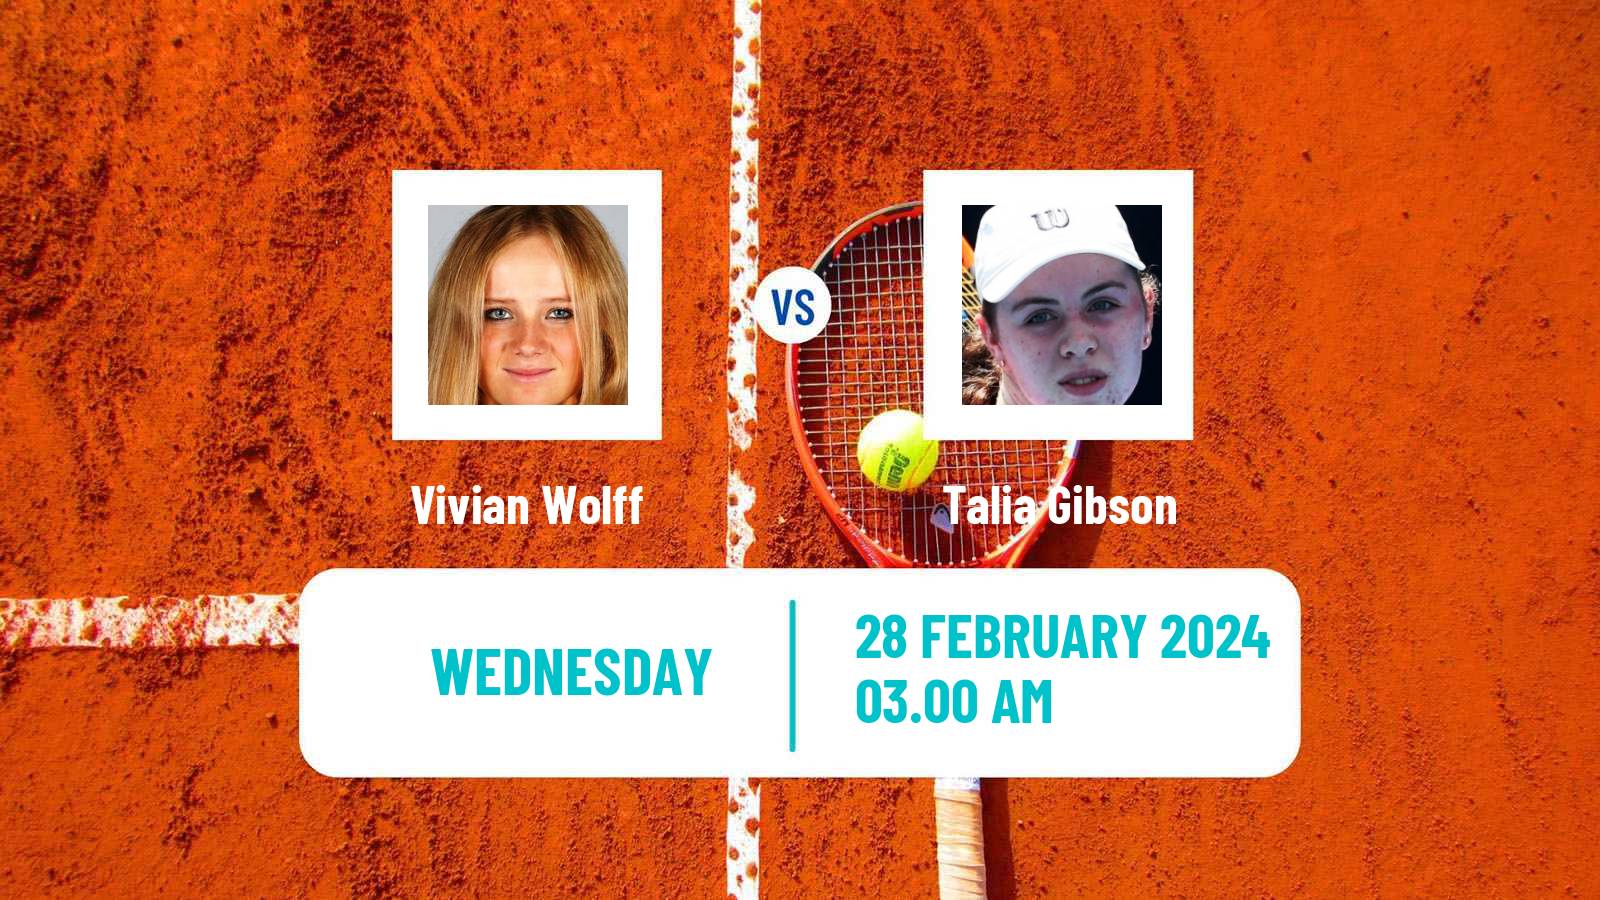 Tennis ITF W35 Helsinki Women Vivian Wolff - Talia Gibson